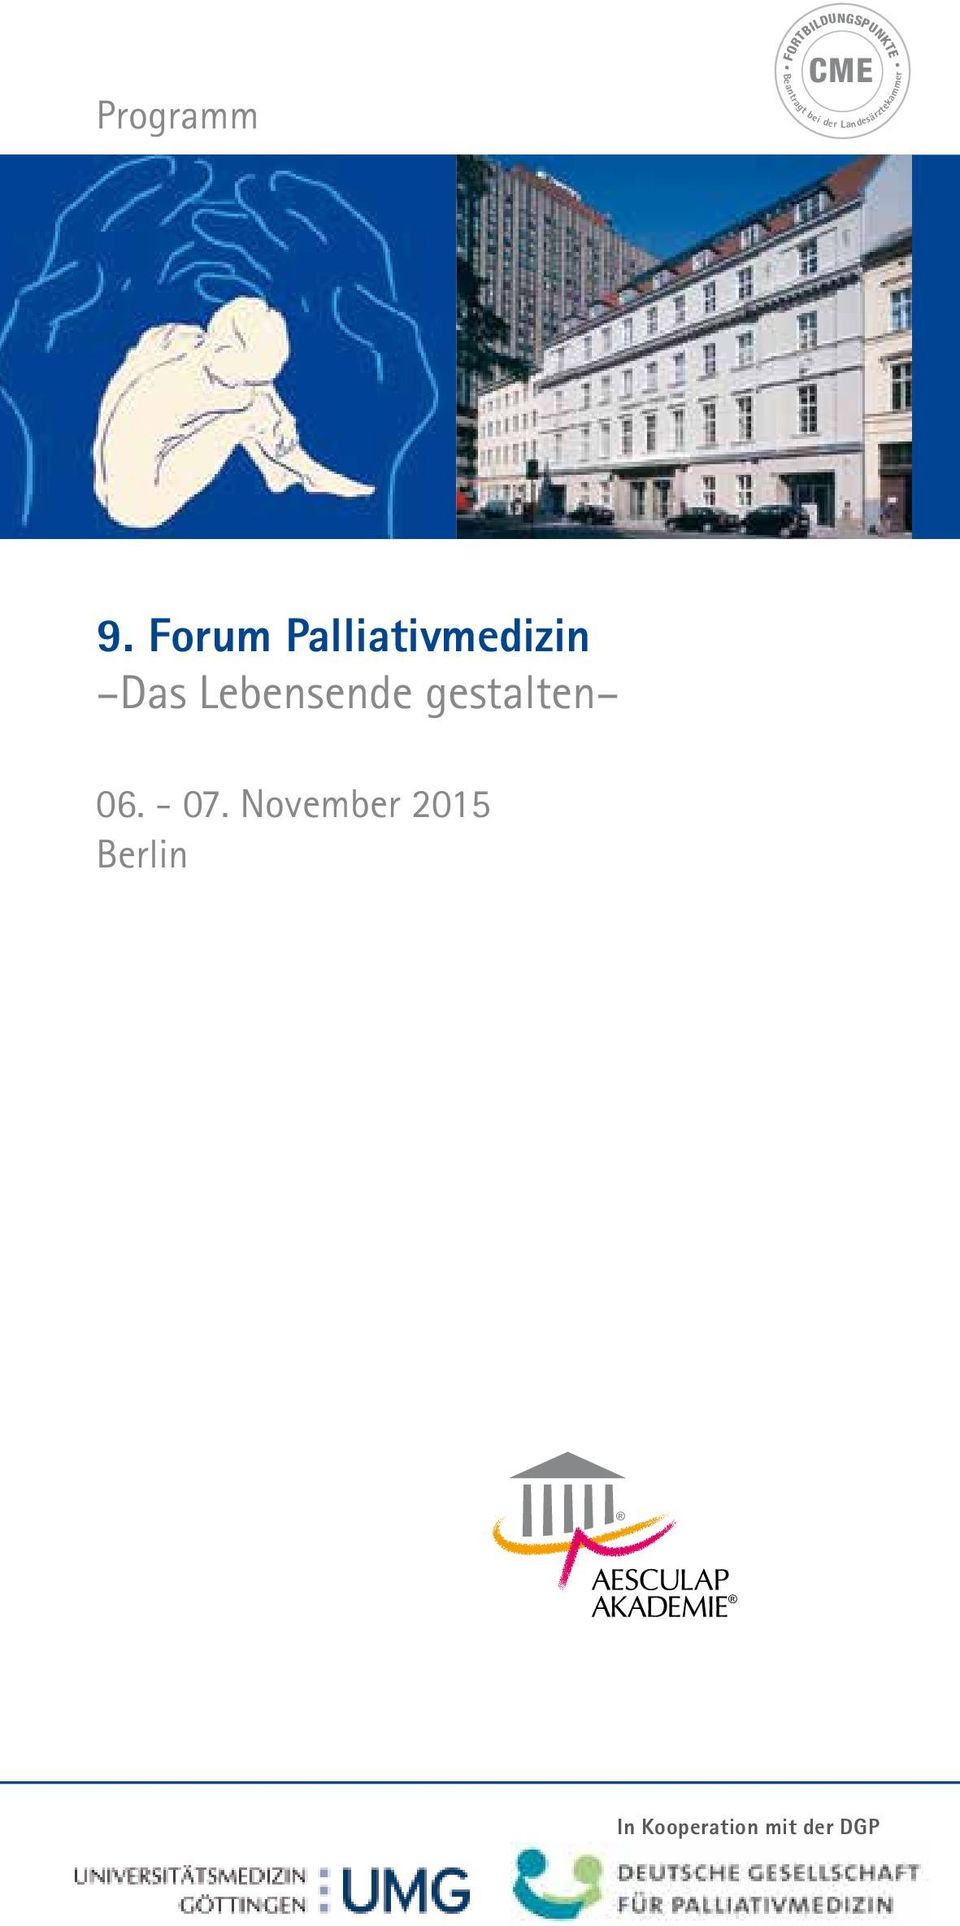 Forum Palliativmedizin Das Lebensende